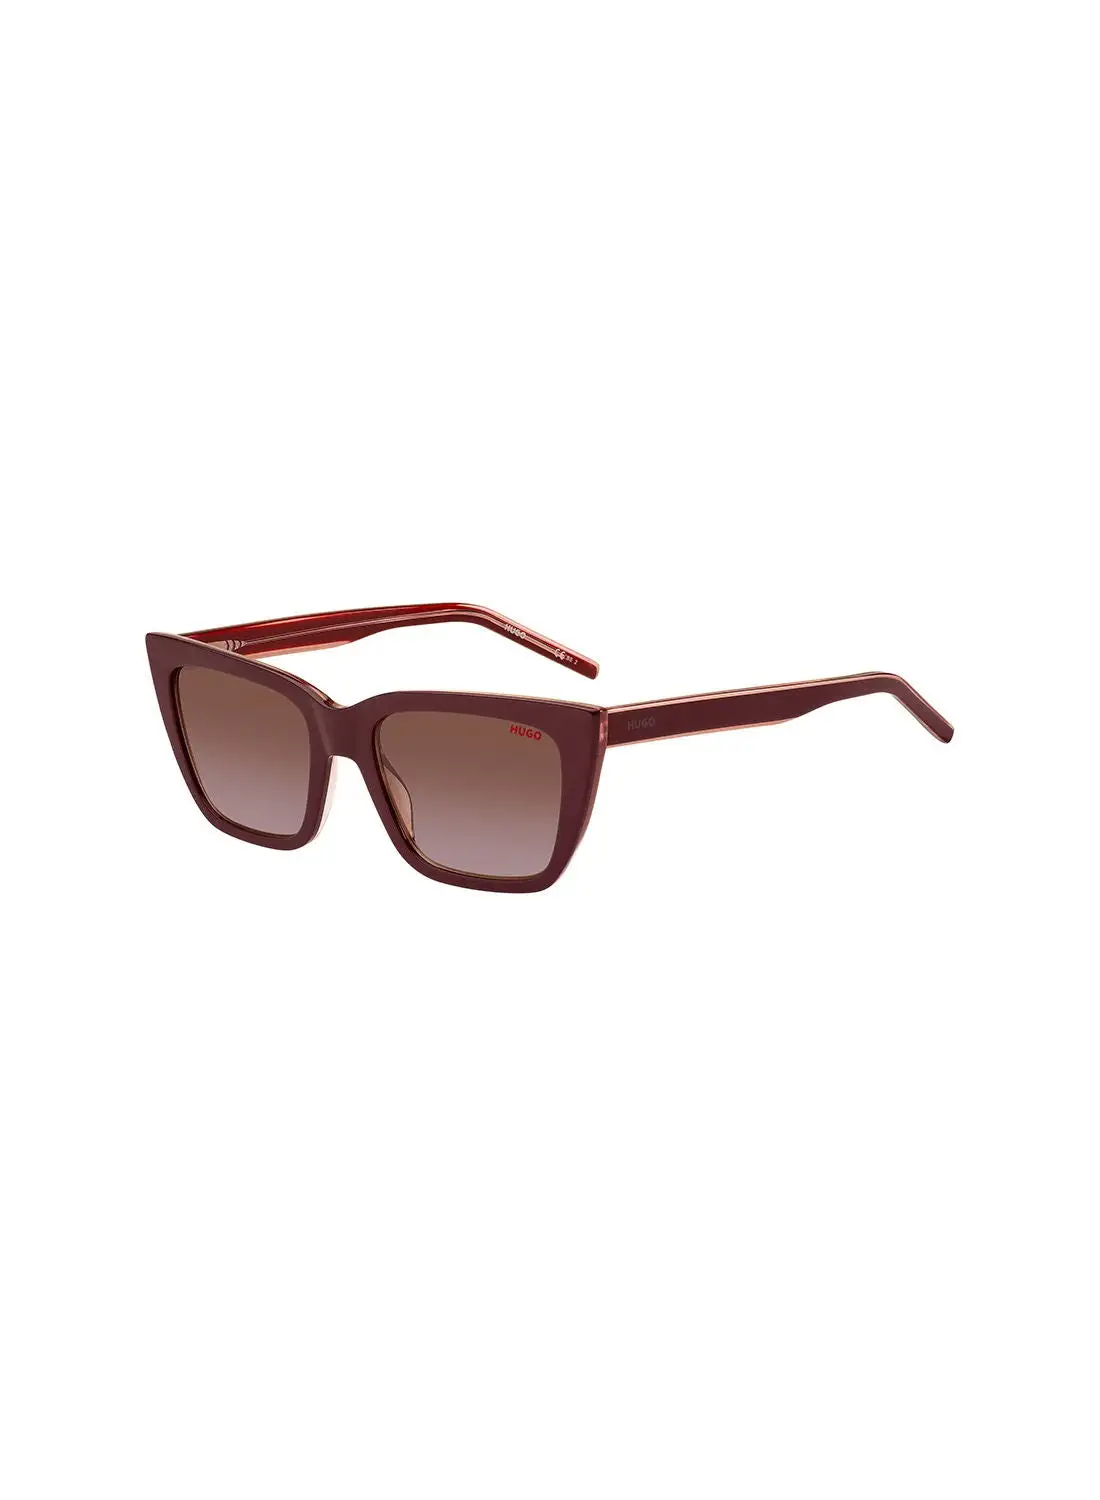 HUGO Women's UV Protection Cat Eye Sunglasses - Hg 1249/S Burgupink 54 - Lens Size: 54 Mm